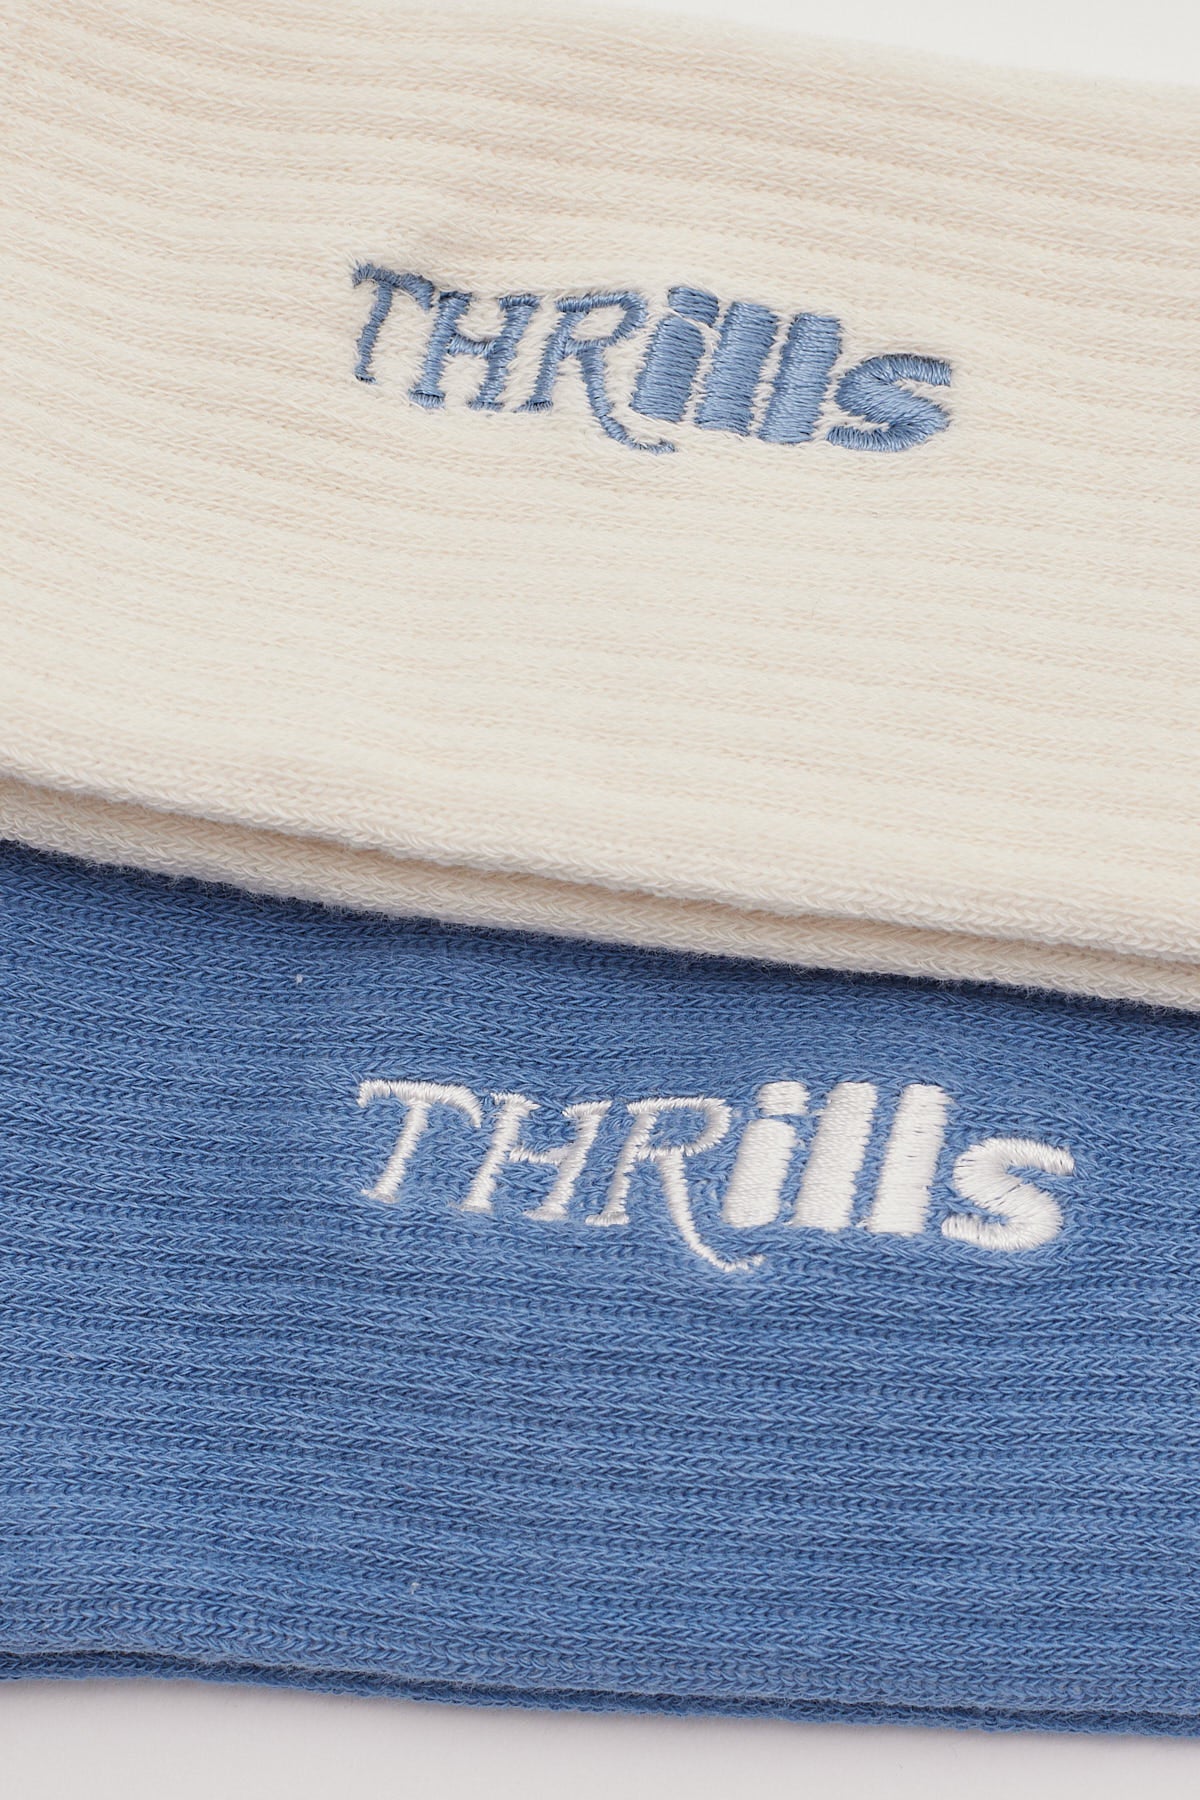 Thrills Split Decision 2Pk Socks White/Blue